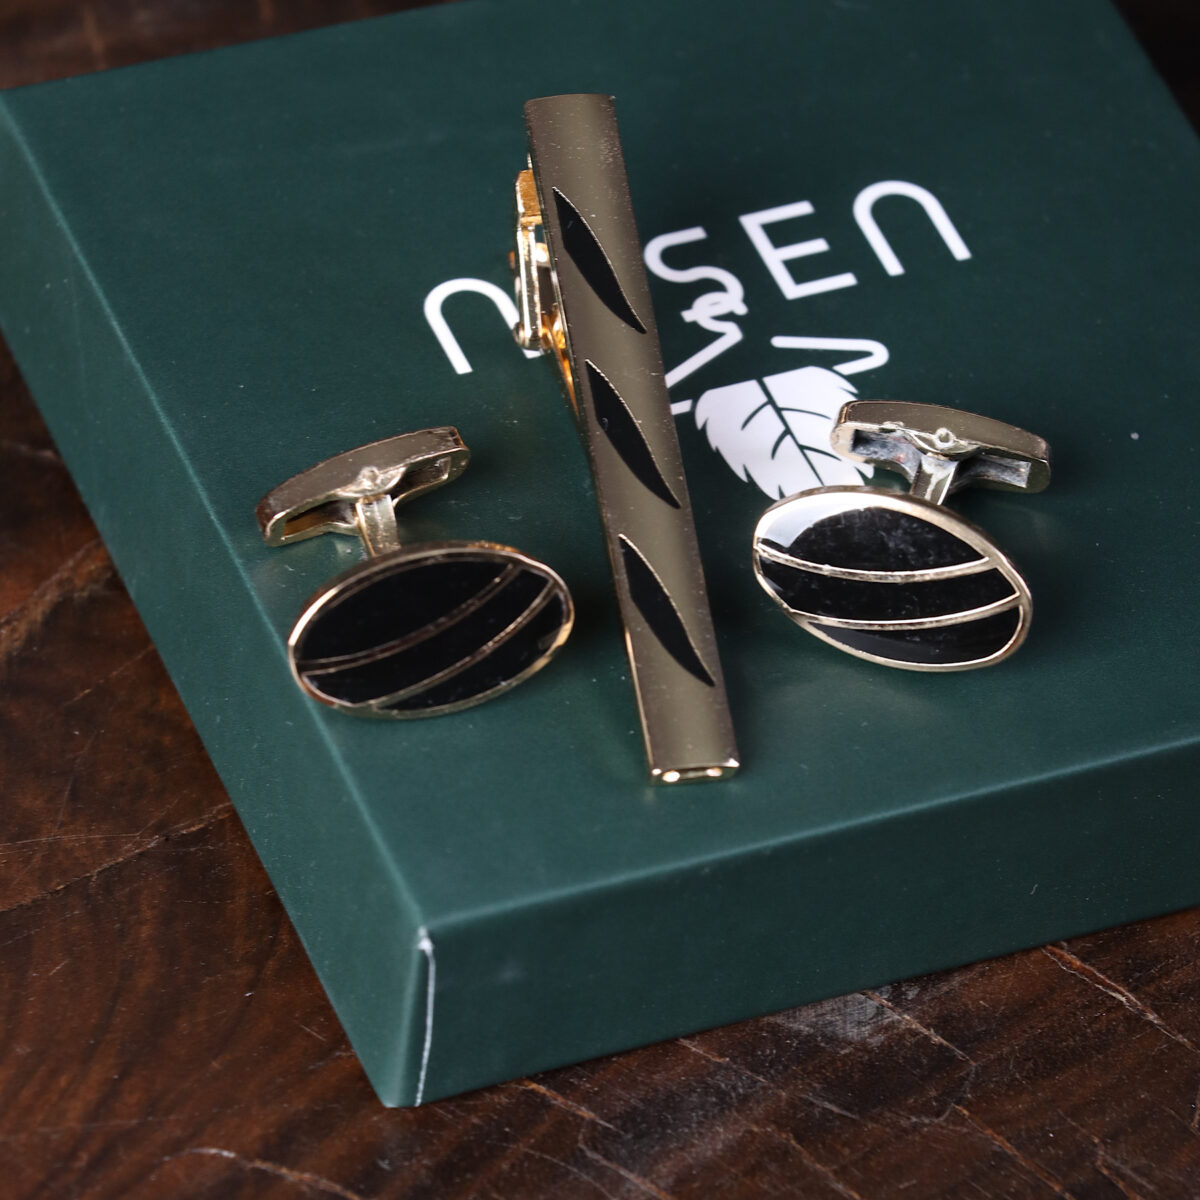 ست دکمه سردست و گیره کراوات مشکی طلایی NESEN مدل ST10